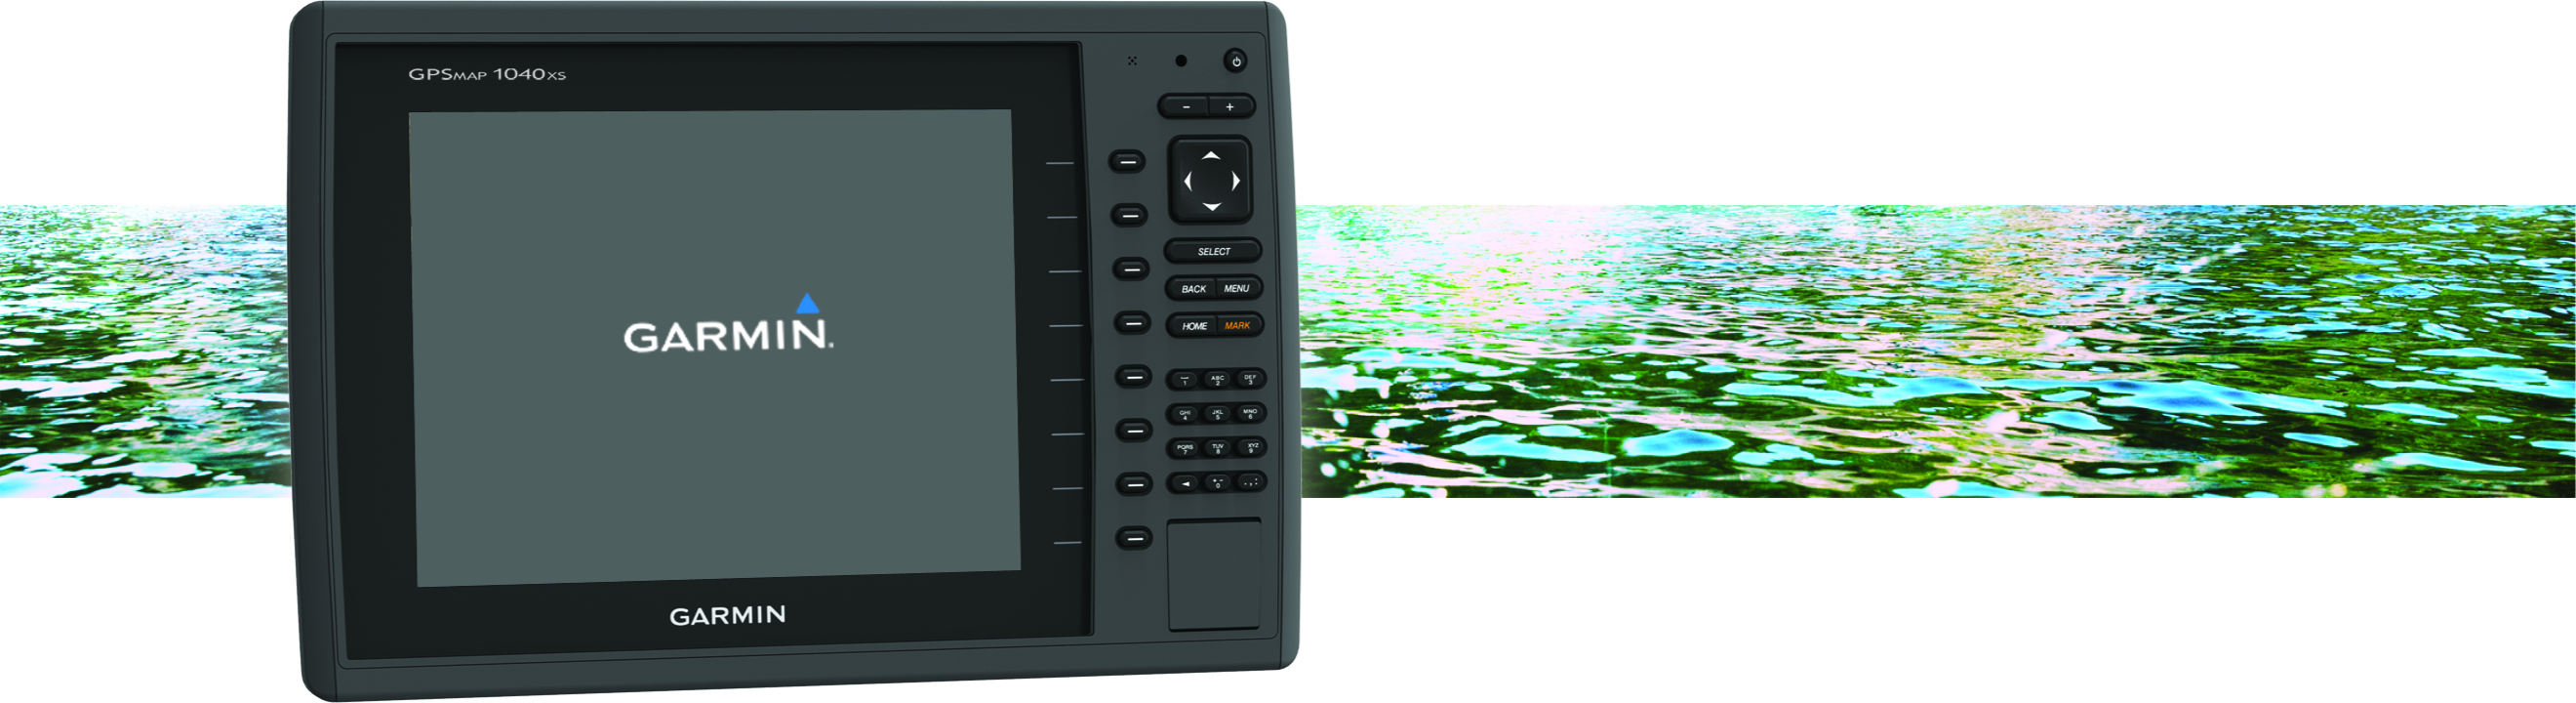 navigation Fange Furnace GPSMAP 800/1000 Series - GPSMAP 800/1000 Series